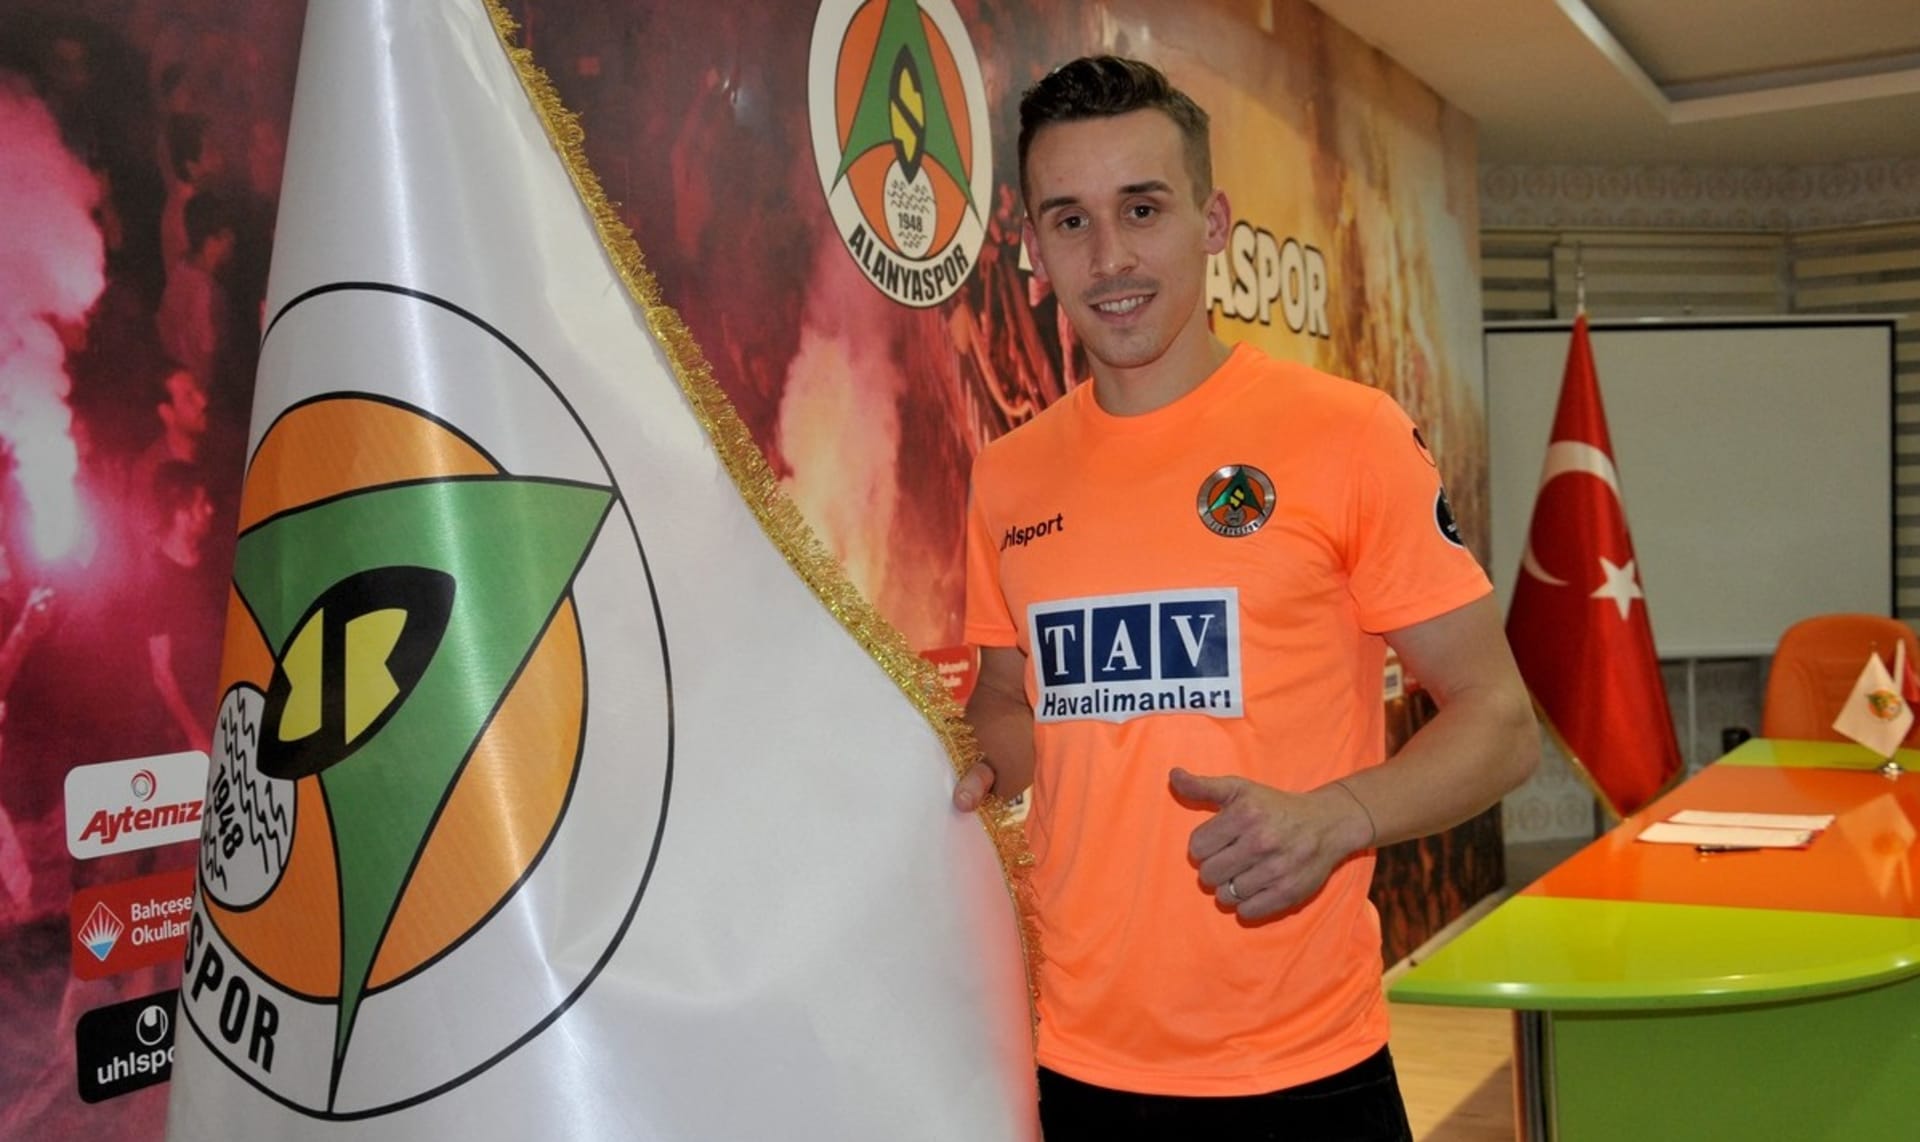 Fotbalista Josef Šural tragicky zemřel v dubnu 2019 při cestě z utkání v Kayserisporu.